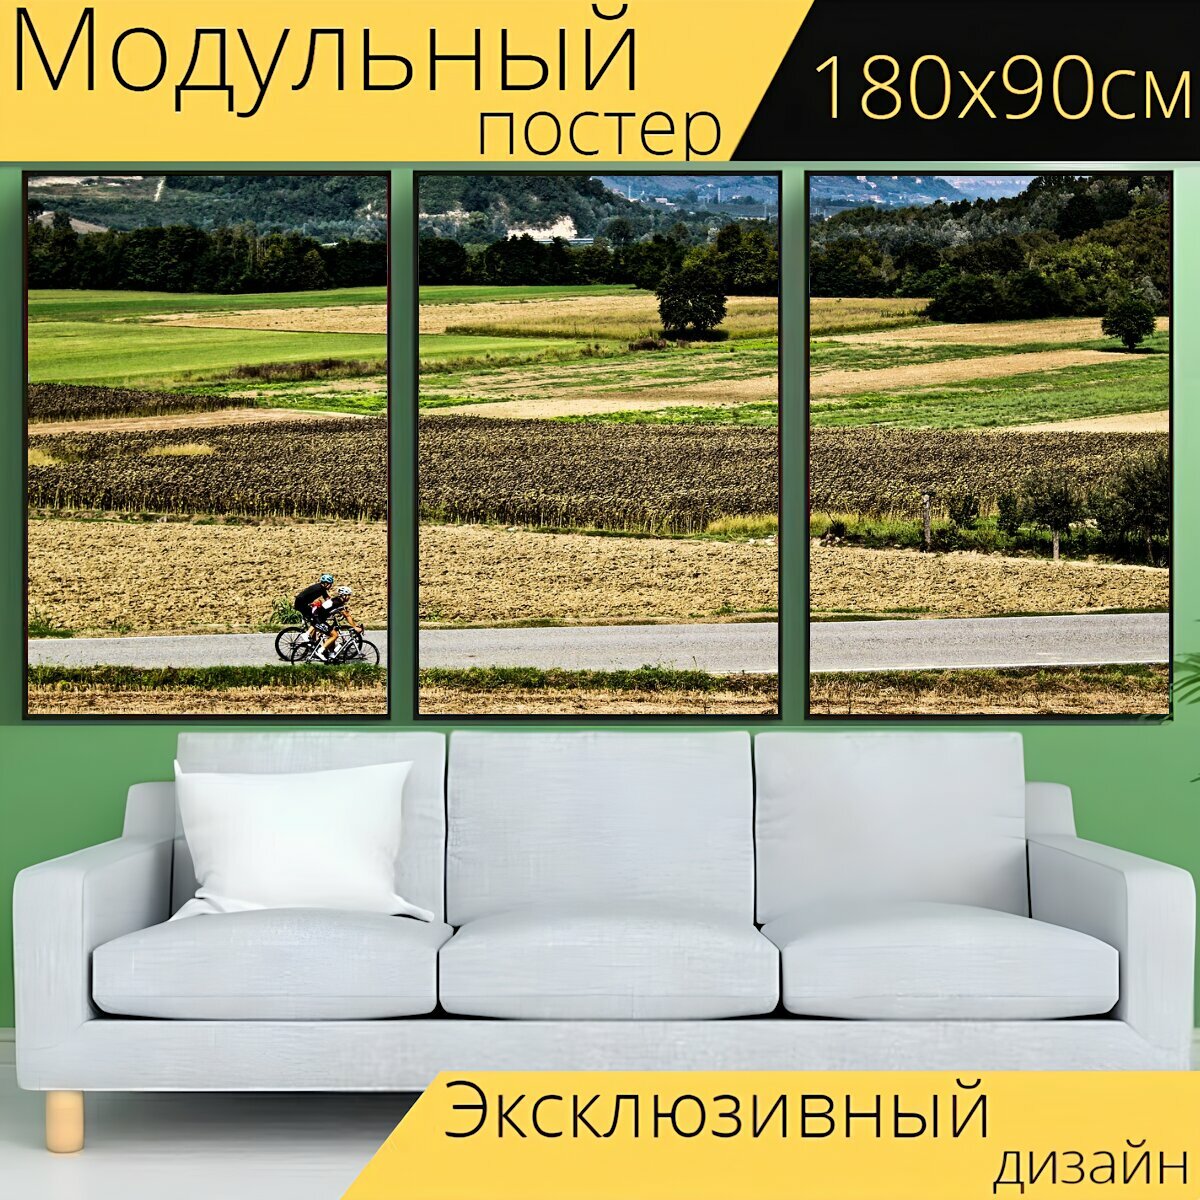 Модульный постер "Велосипеды, кататься на велосипеде, велосипедисты" 180 x 90 см. для интерьера